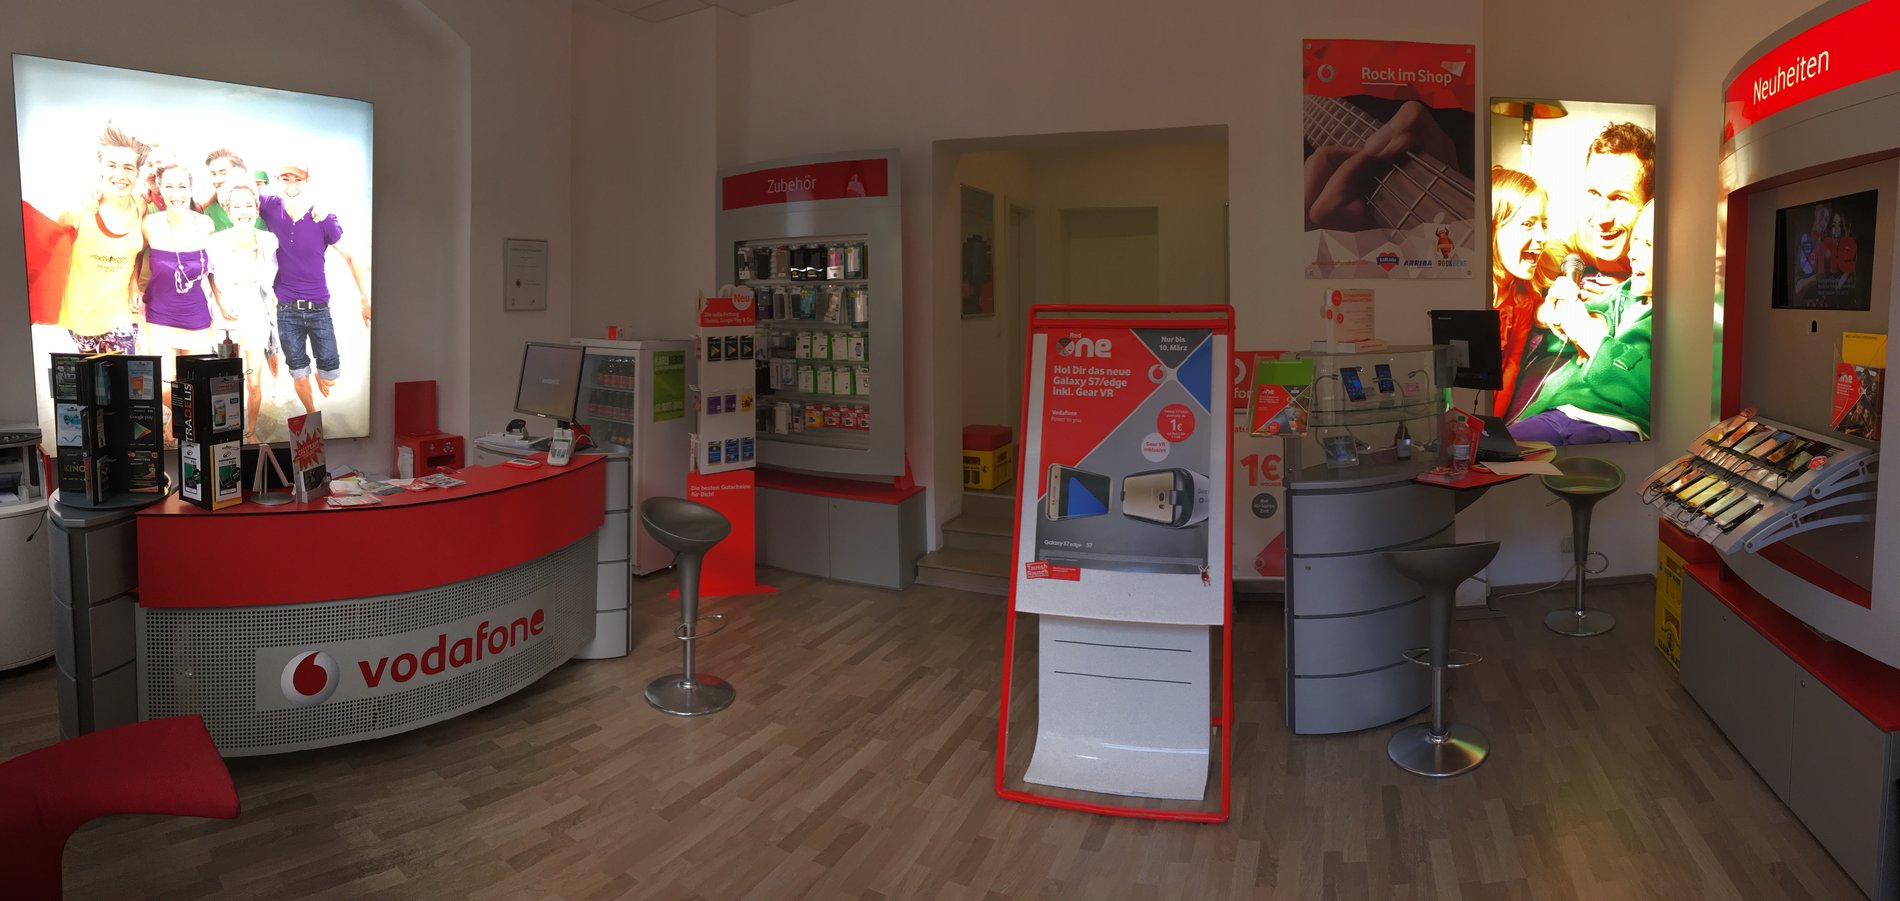 Vodafone-Shop in Leipzig, Karl-Liebknecht-Str. 17